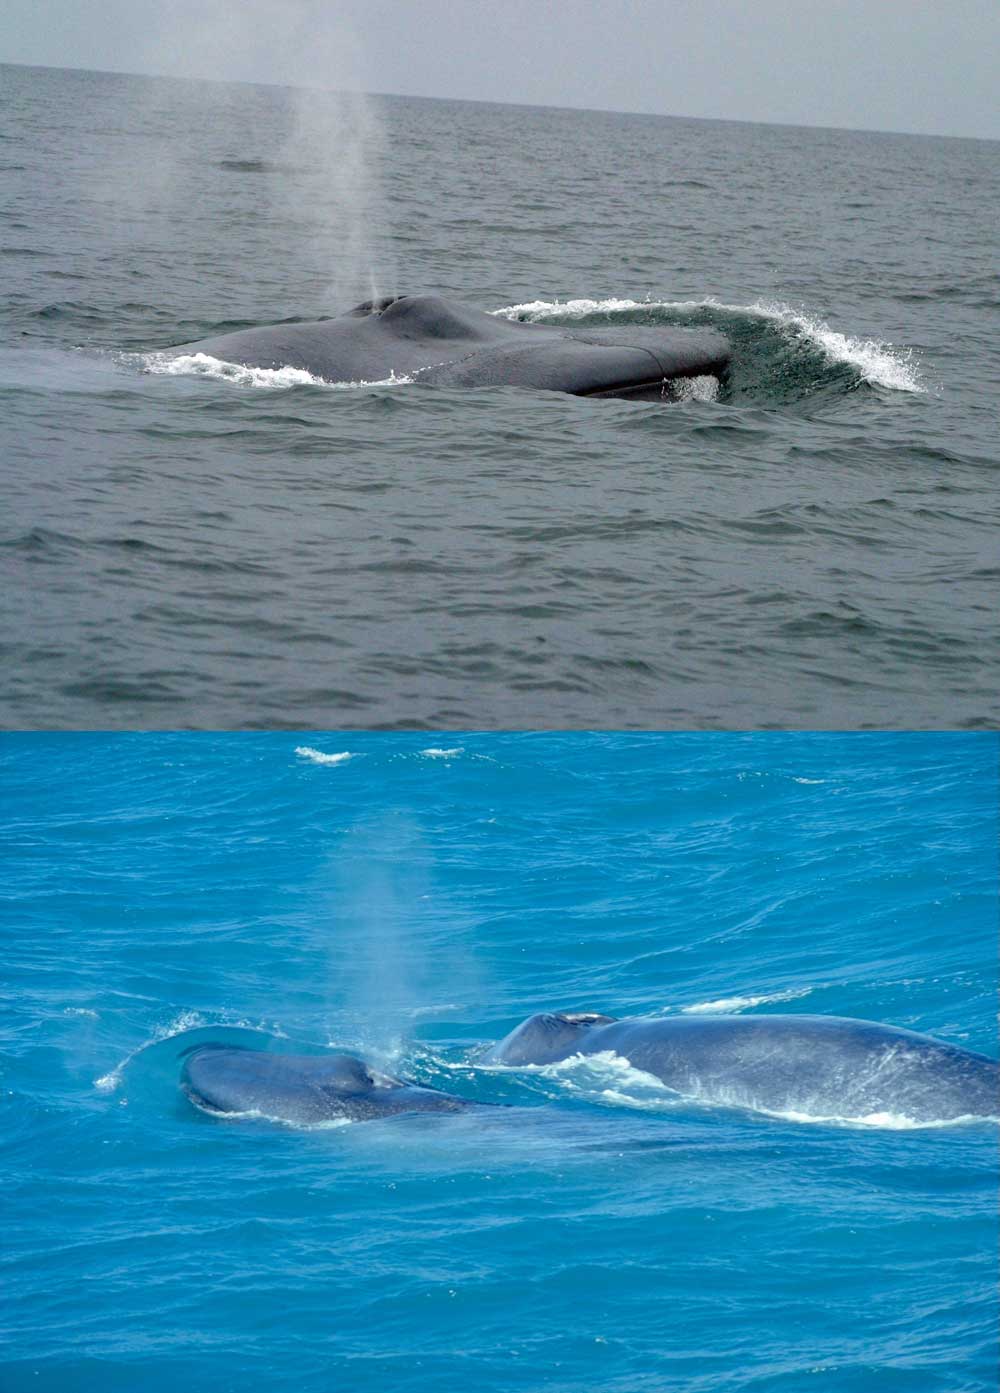 Fakta: Blåhvalen udånder vind gennem sit blæsehul i vandoverfladen.